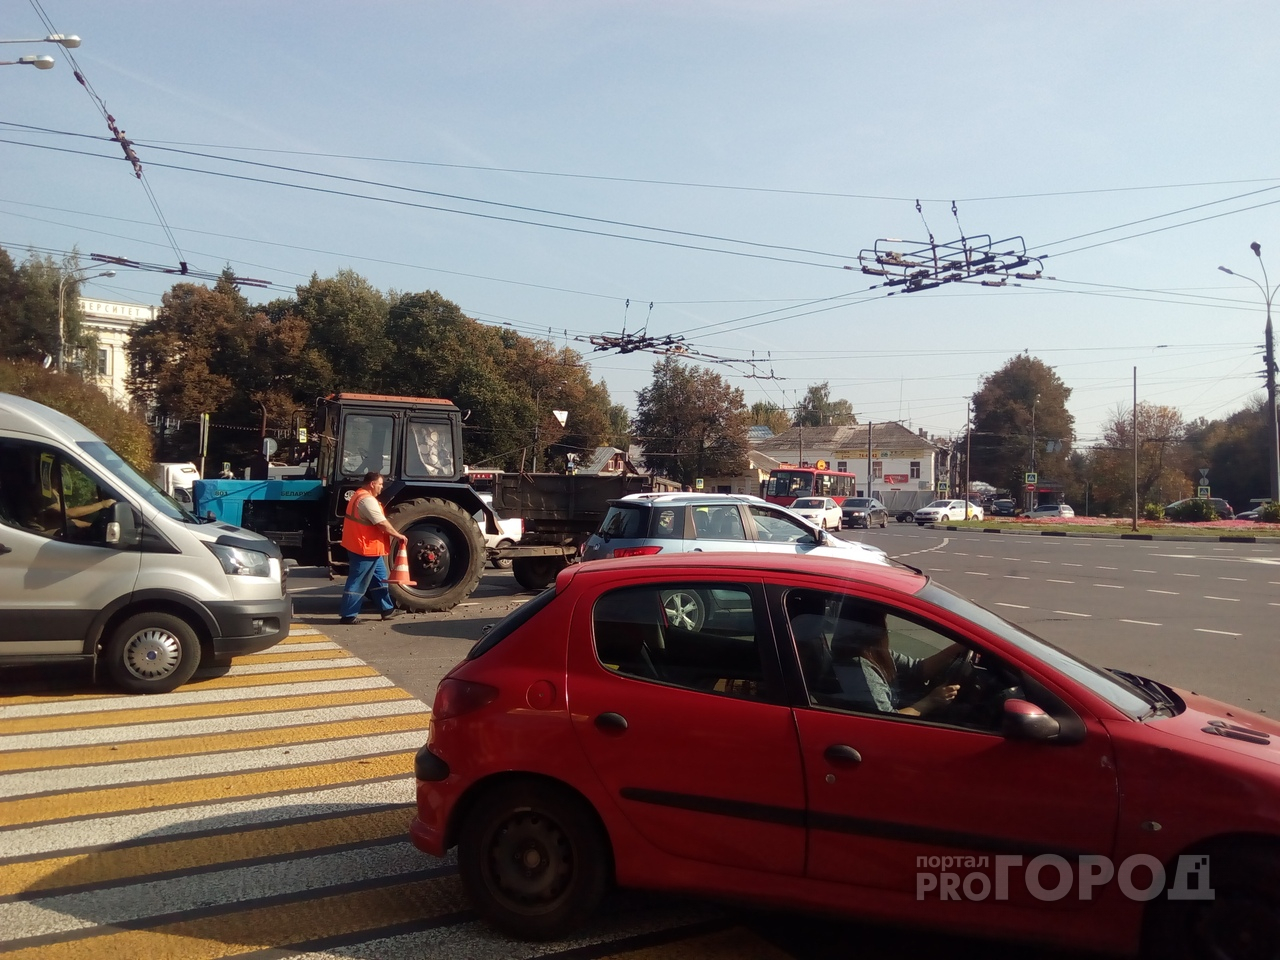 МТС запустит мобильный интернет вдоль автотрассы М8 и железной дороги Ярославль – Москва